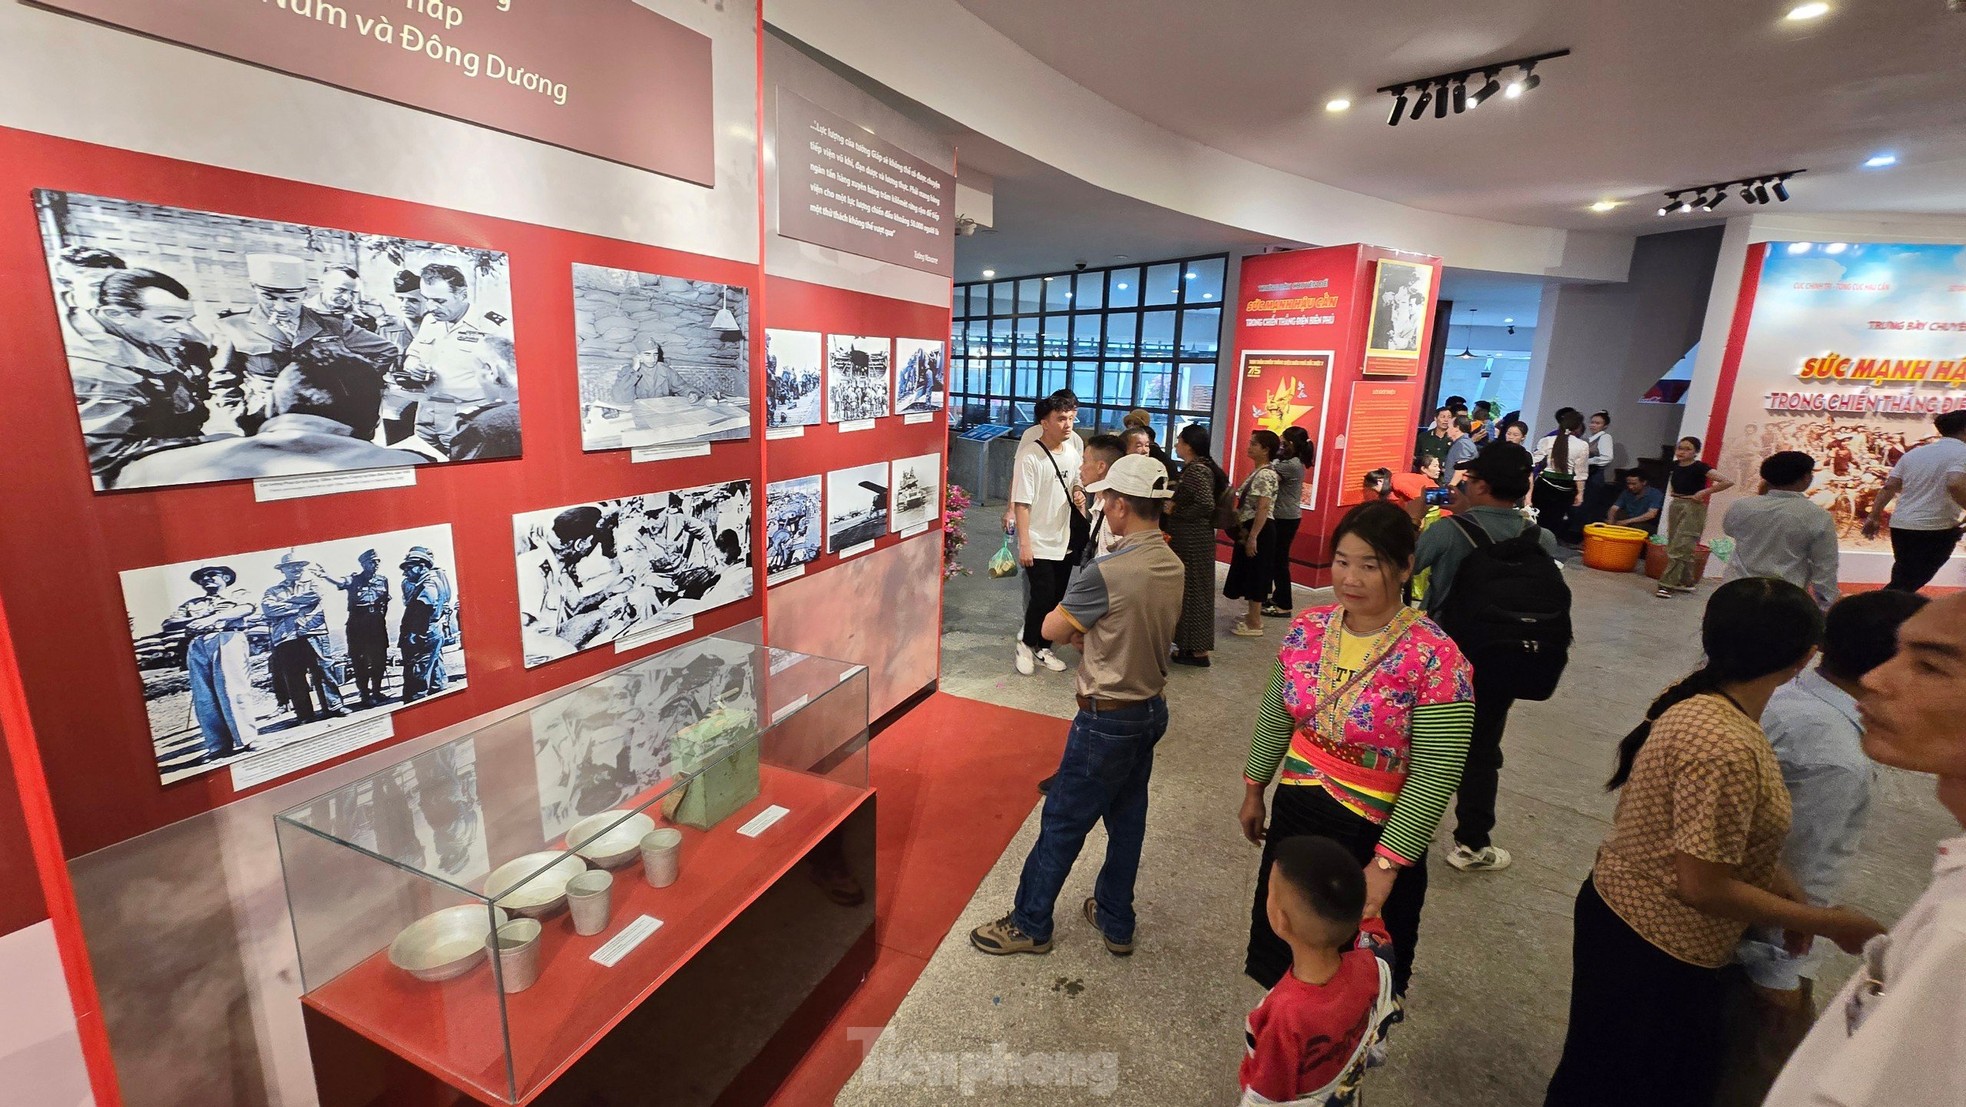 Di tích lịch sử trên khắp Điện Biên đón lượng khách tham quan kỷ lục sau lễ kỷ niệm 70 năm ảnh 8